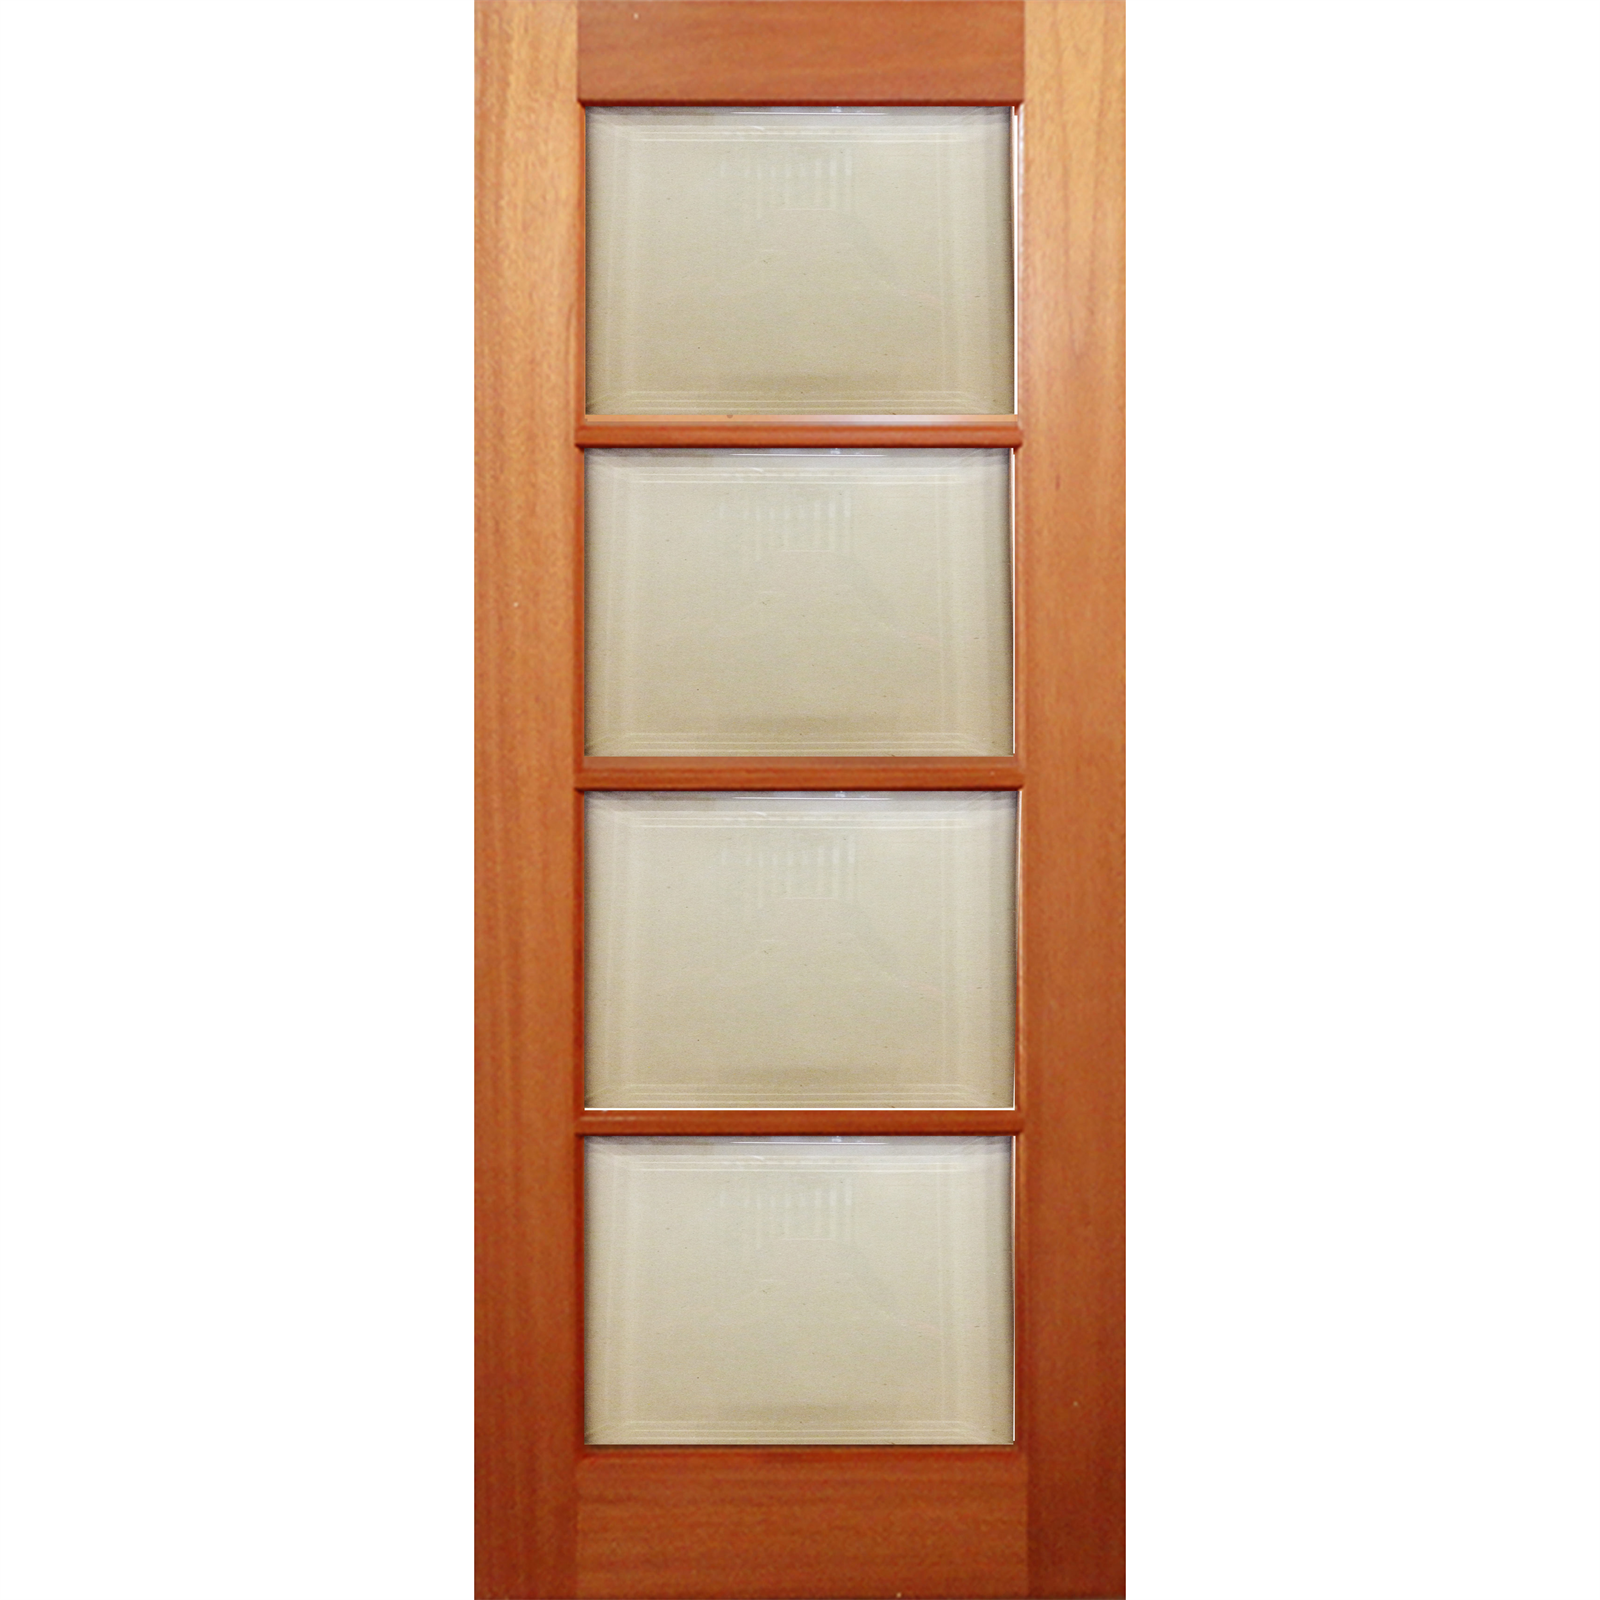 Woodcraft Doors 2040 x 820 x 40mm Lauren Clear Bevelled Safety Glass Entrance Door